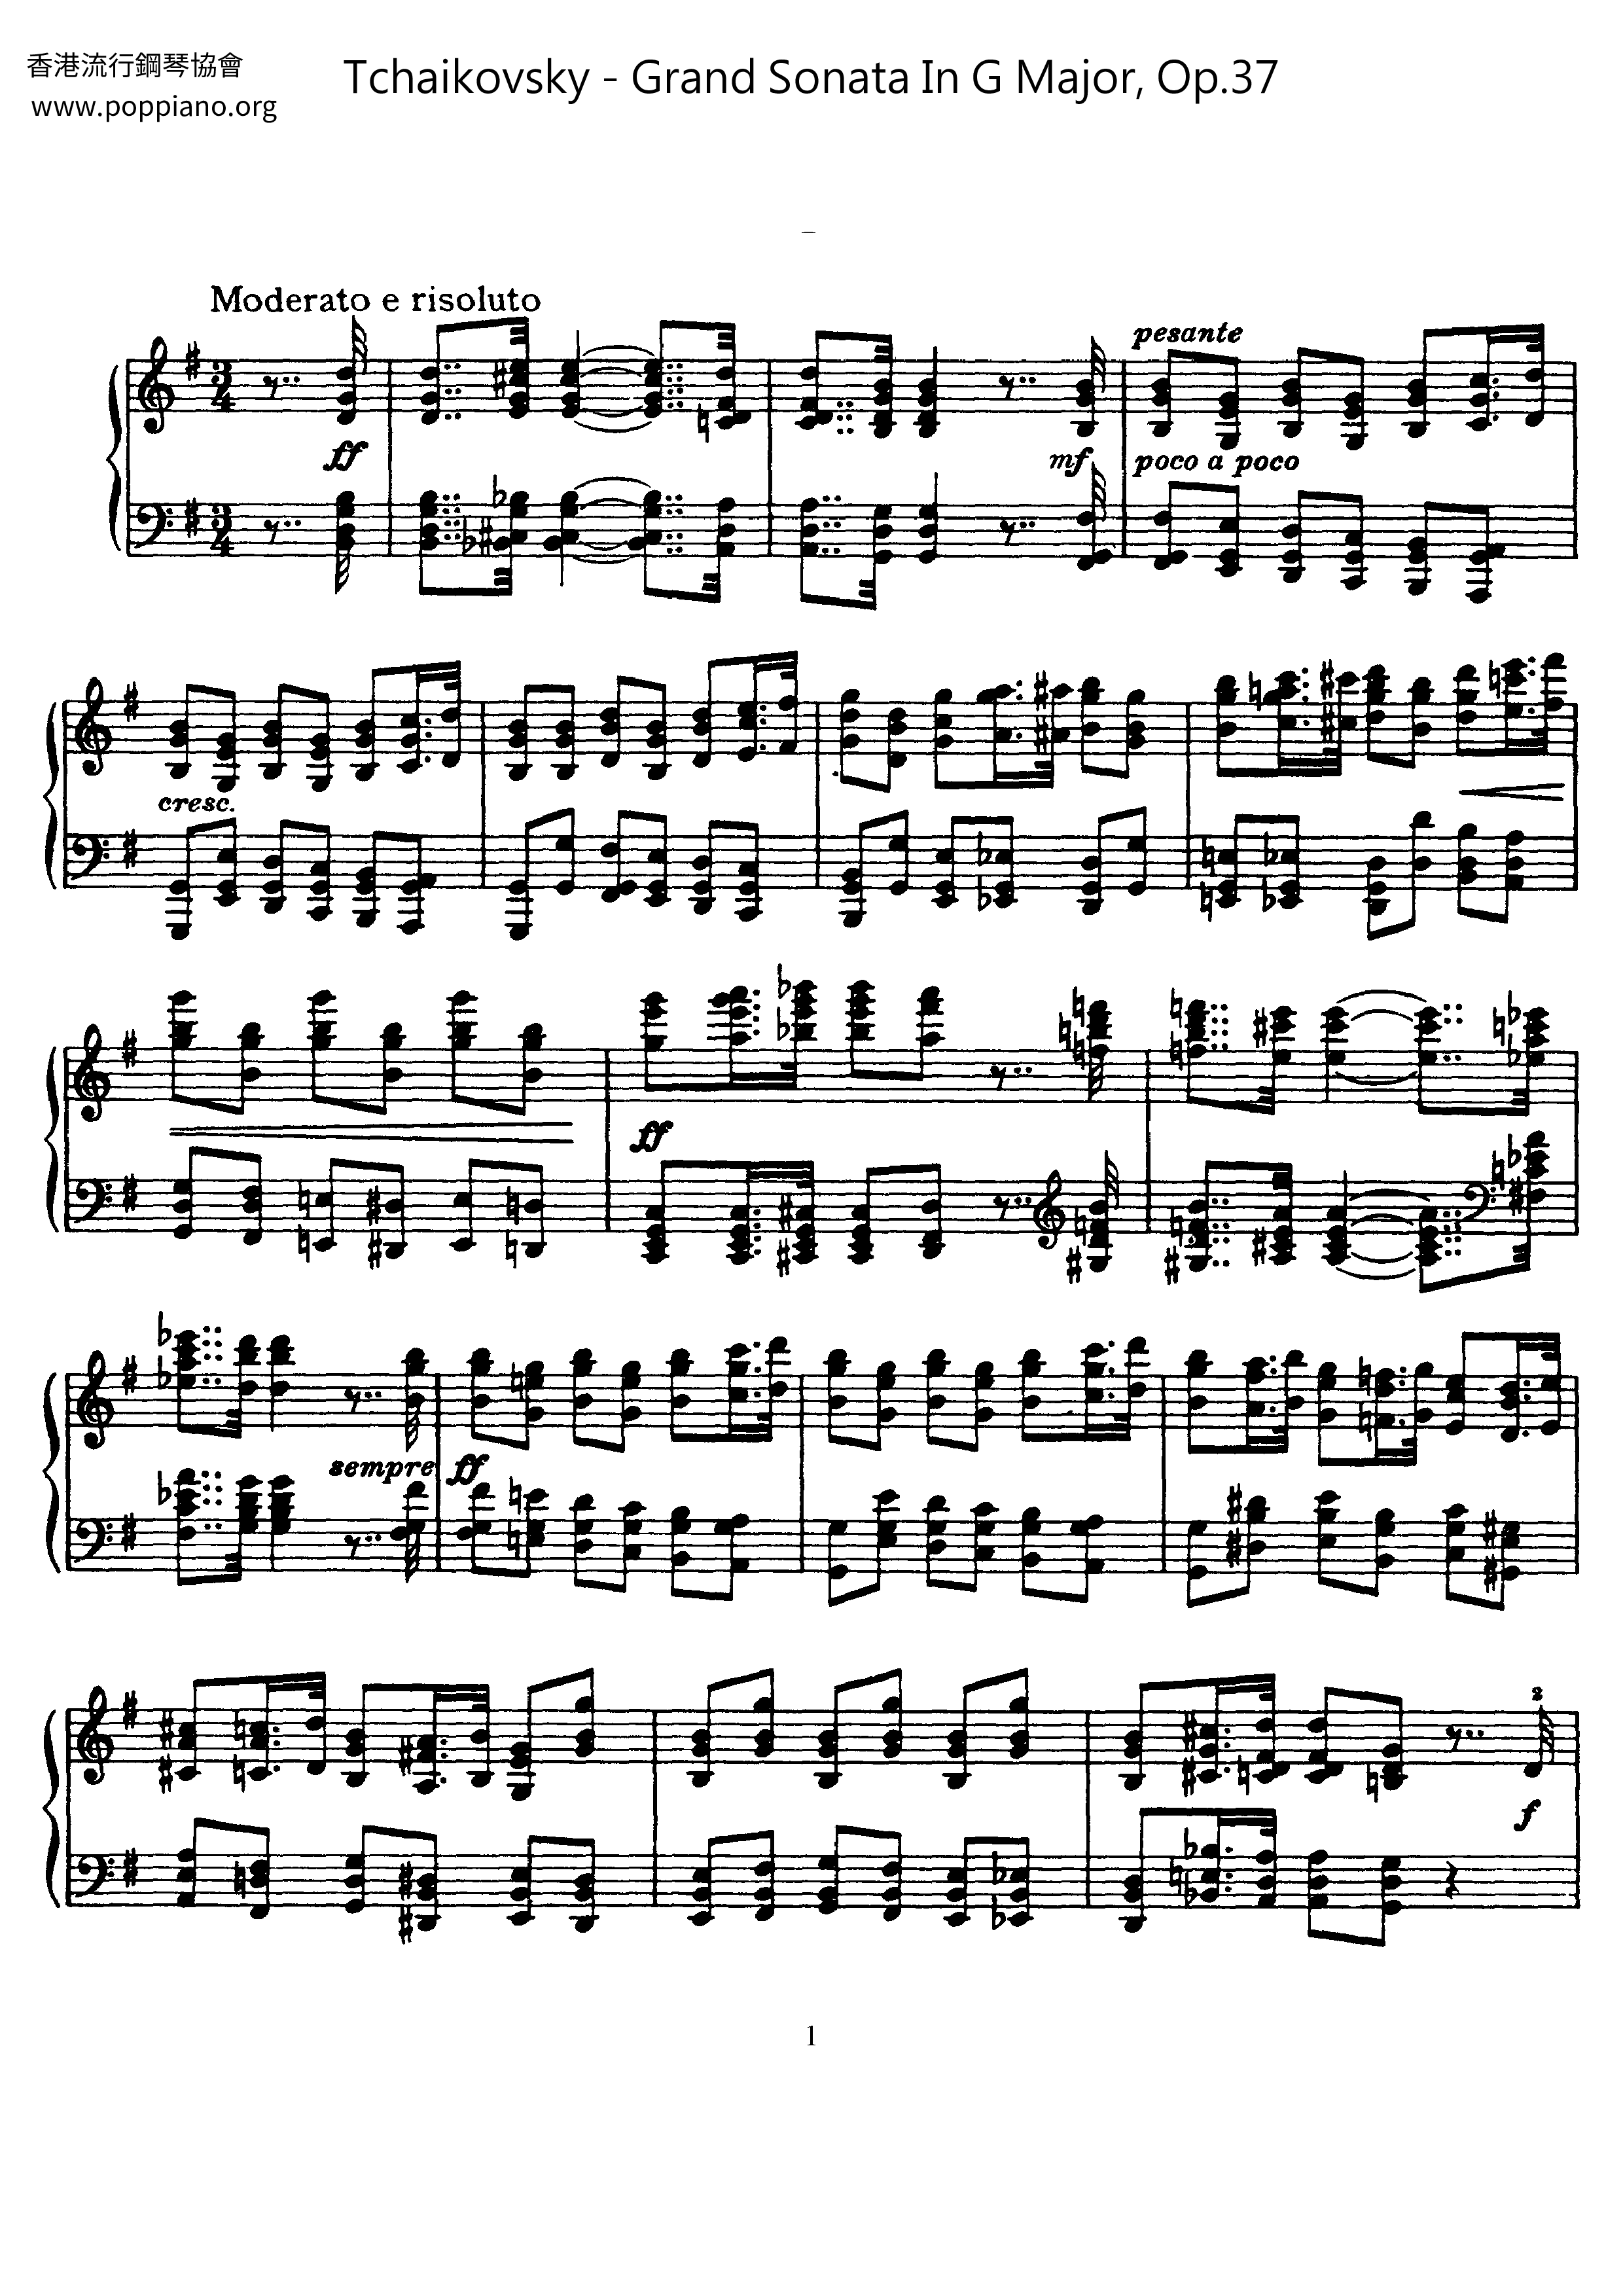 Grand Sonata in G Major, Op.37 Score